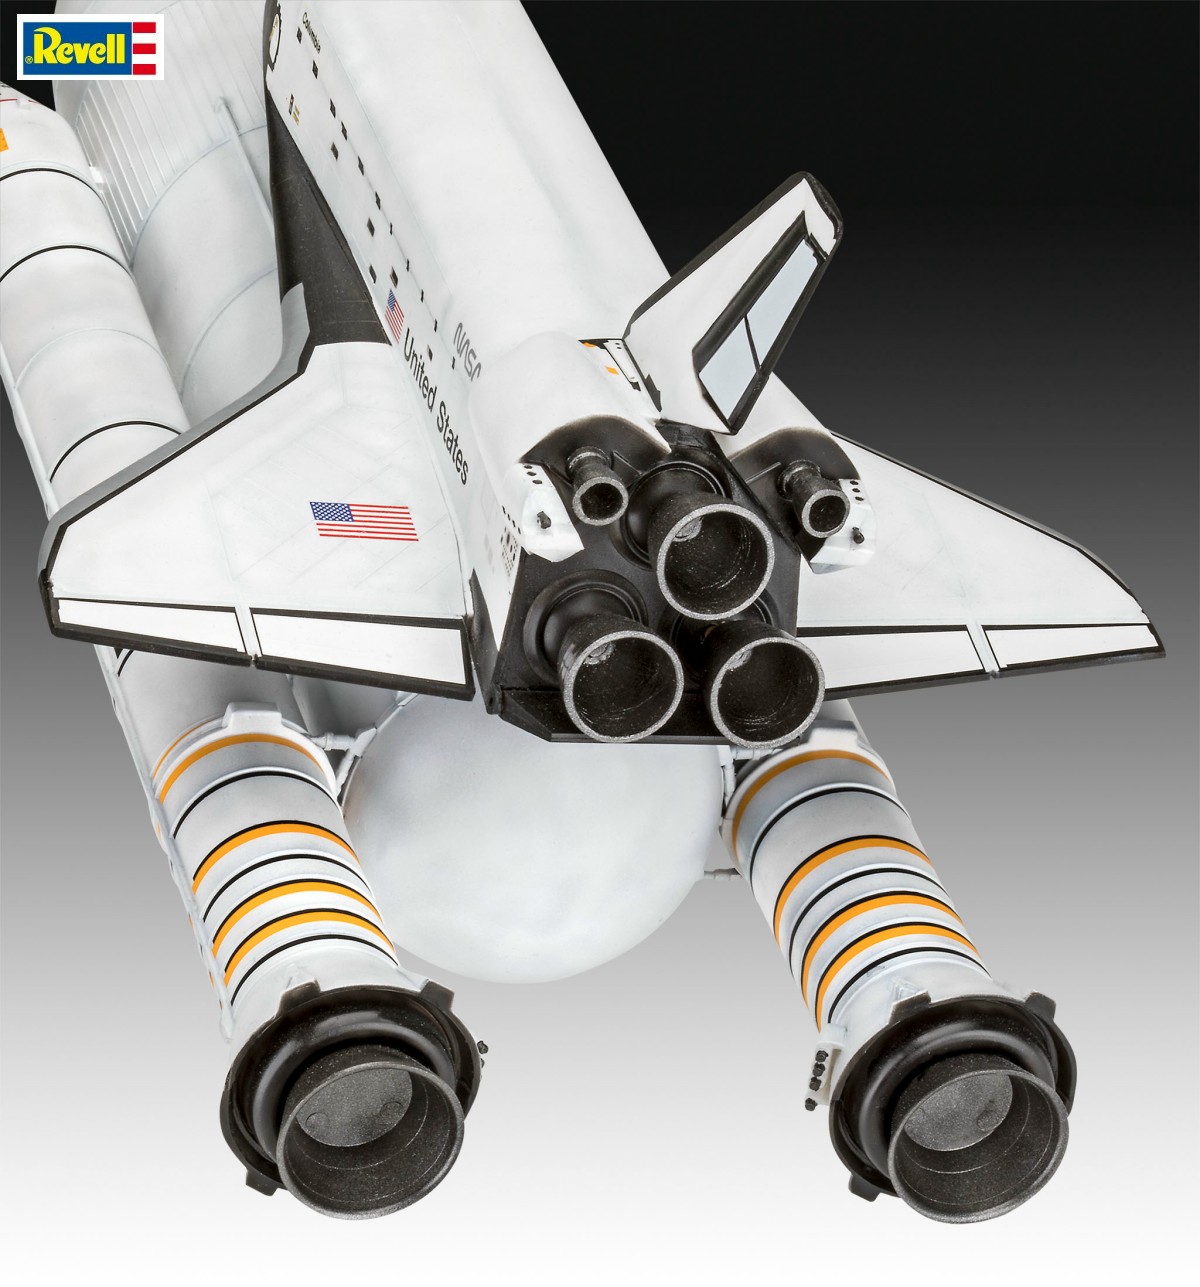 Revell 05674, EAN 4009803056746: 1:144 Geschenkset Space Shuttle& Booster Rockets, 40th.